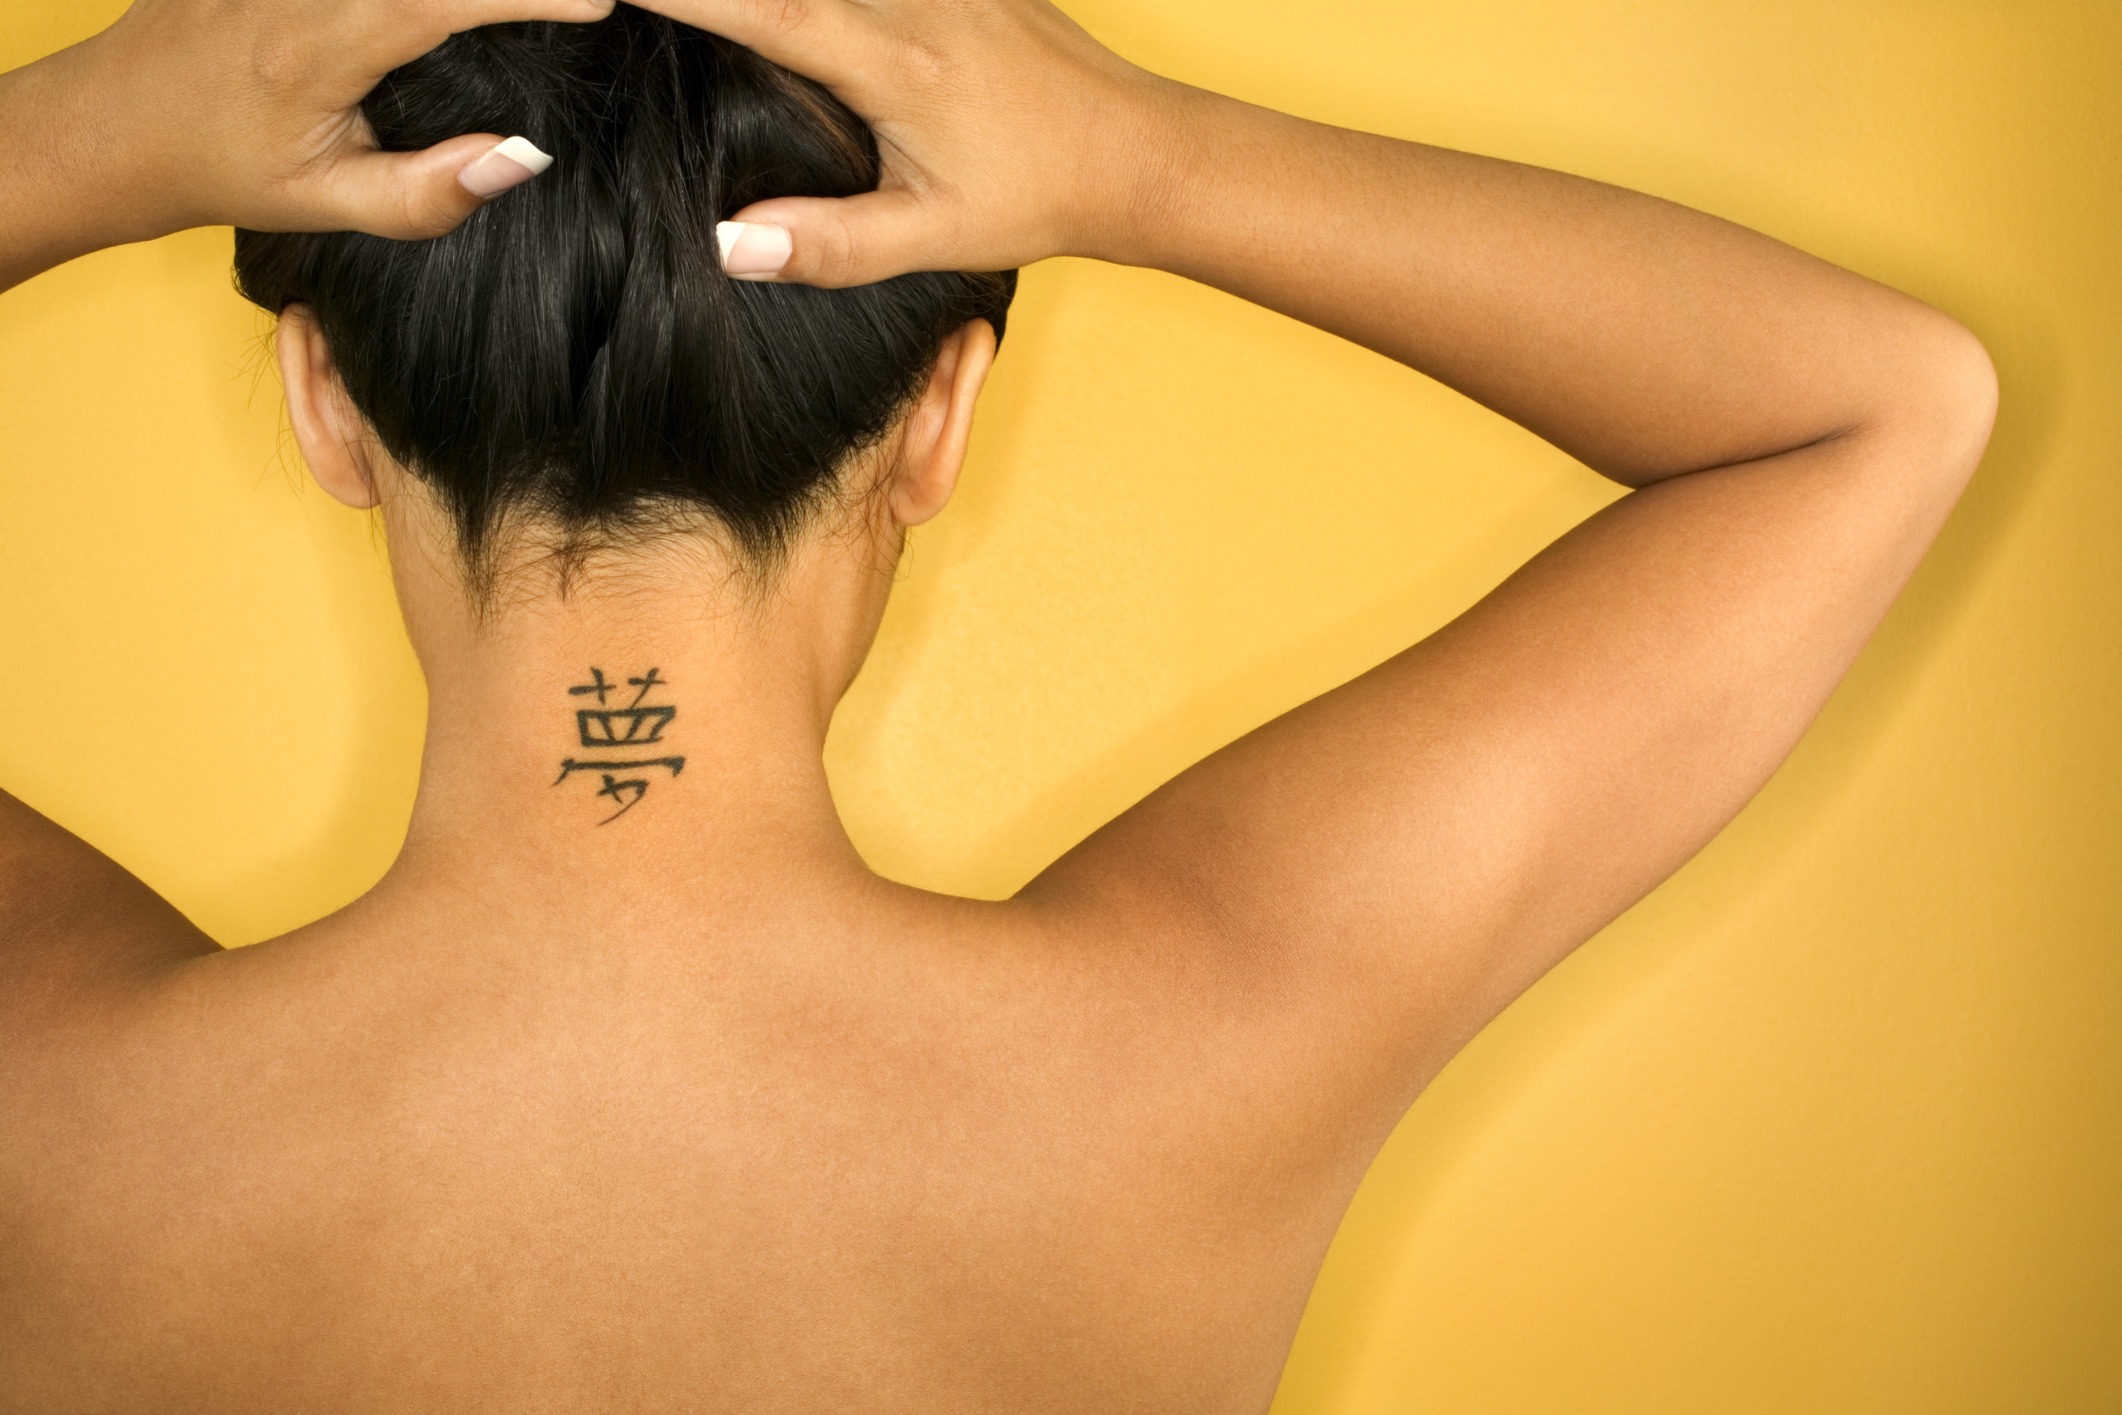 Tatuaggi 2015, piccoli e colorati per uno stile trendy